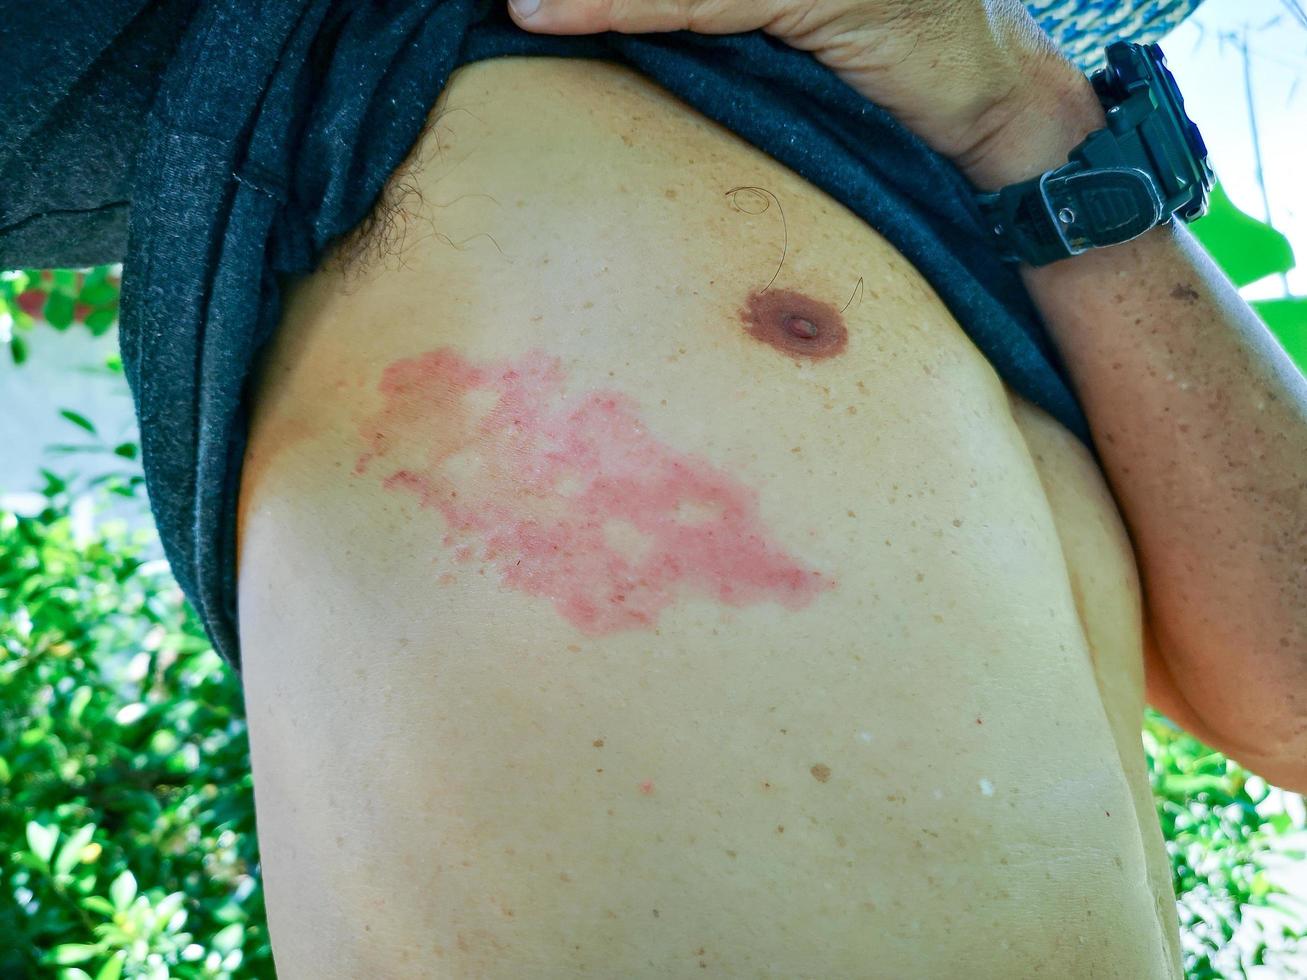 doloroso rash cutaneo alla schiena con vesciche in un'area limitata. un uomo che aveva vesciche da varicella, varicella, herpes zoster o fuoco di Sant'Antonio. foto